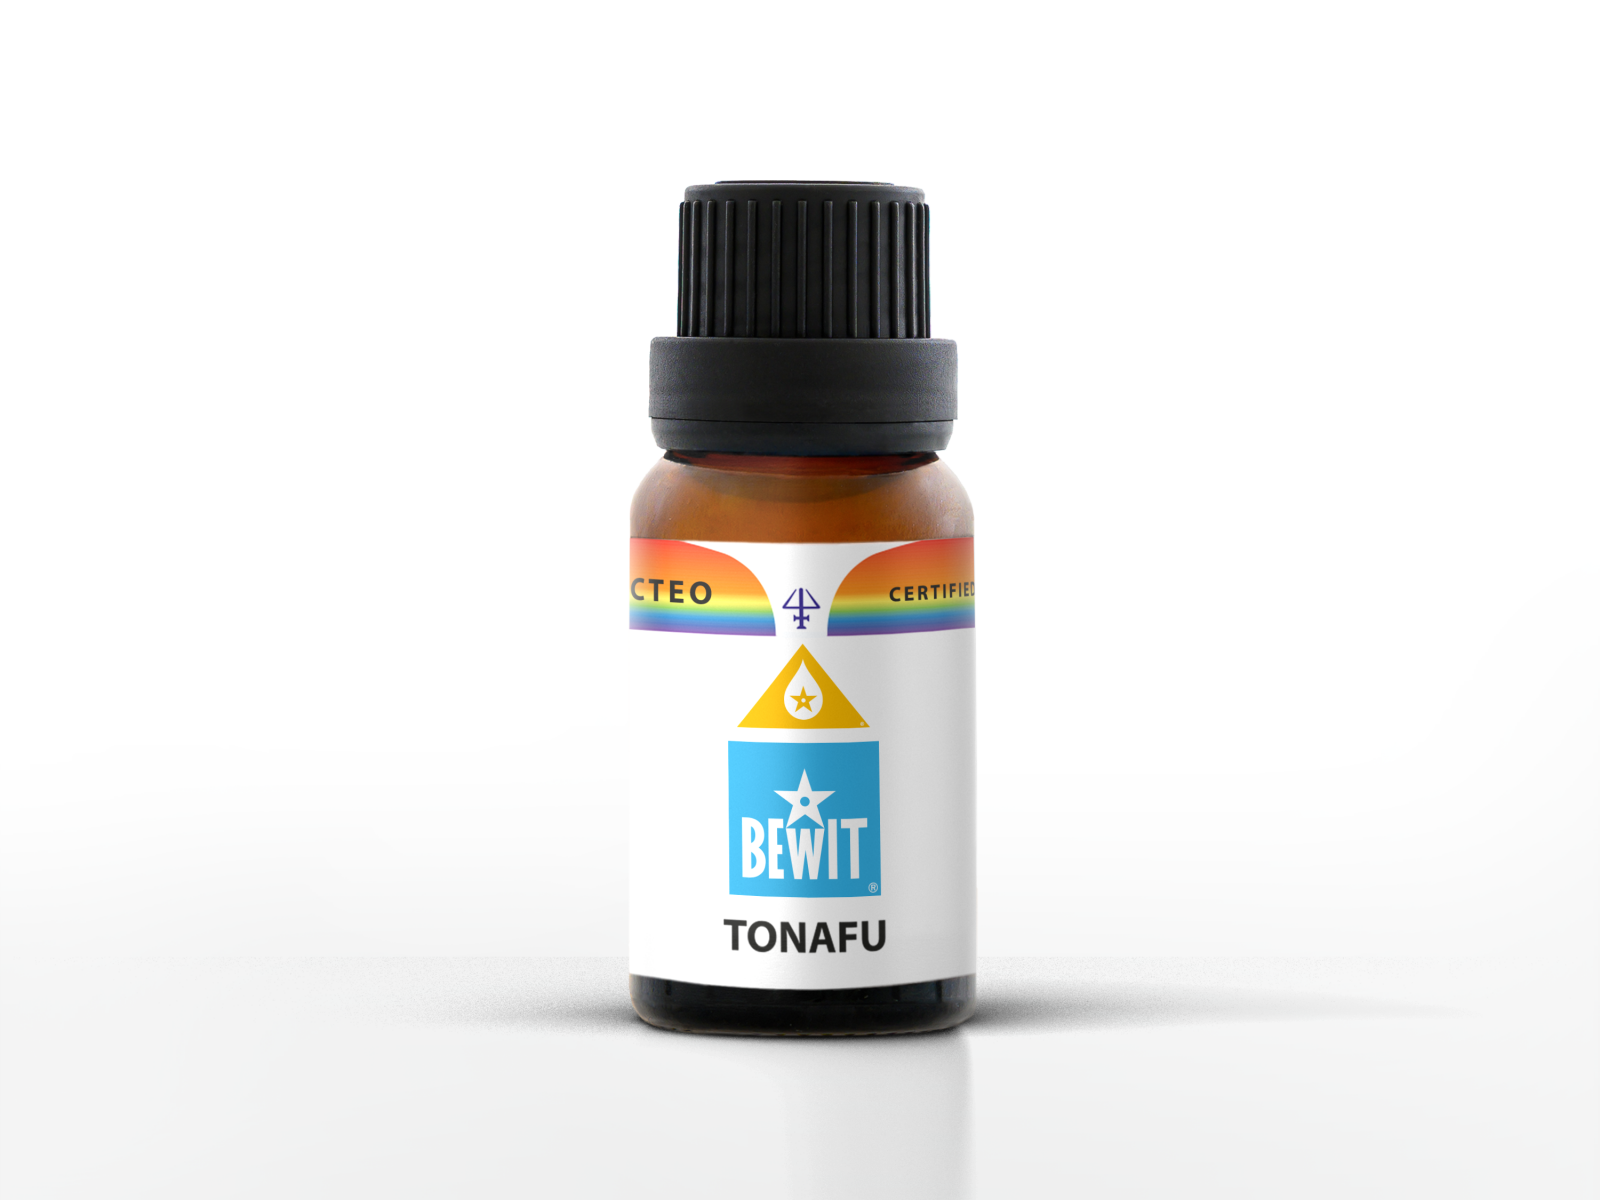 BEWIT TONAFU - Blend of essential oils